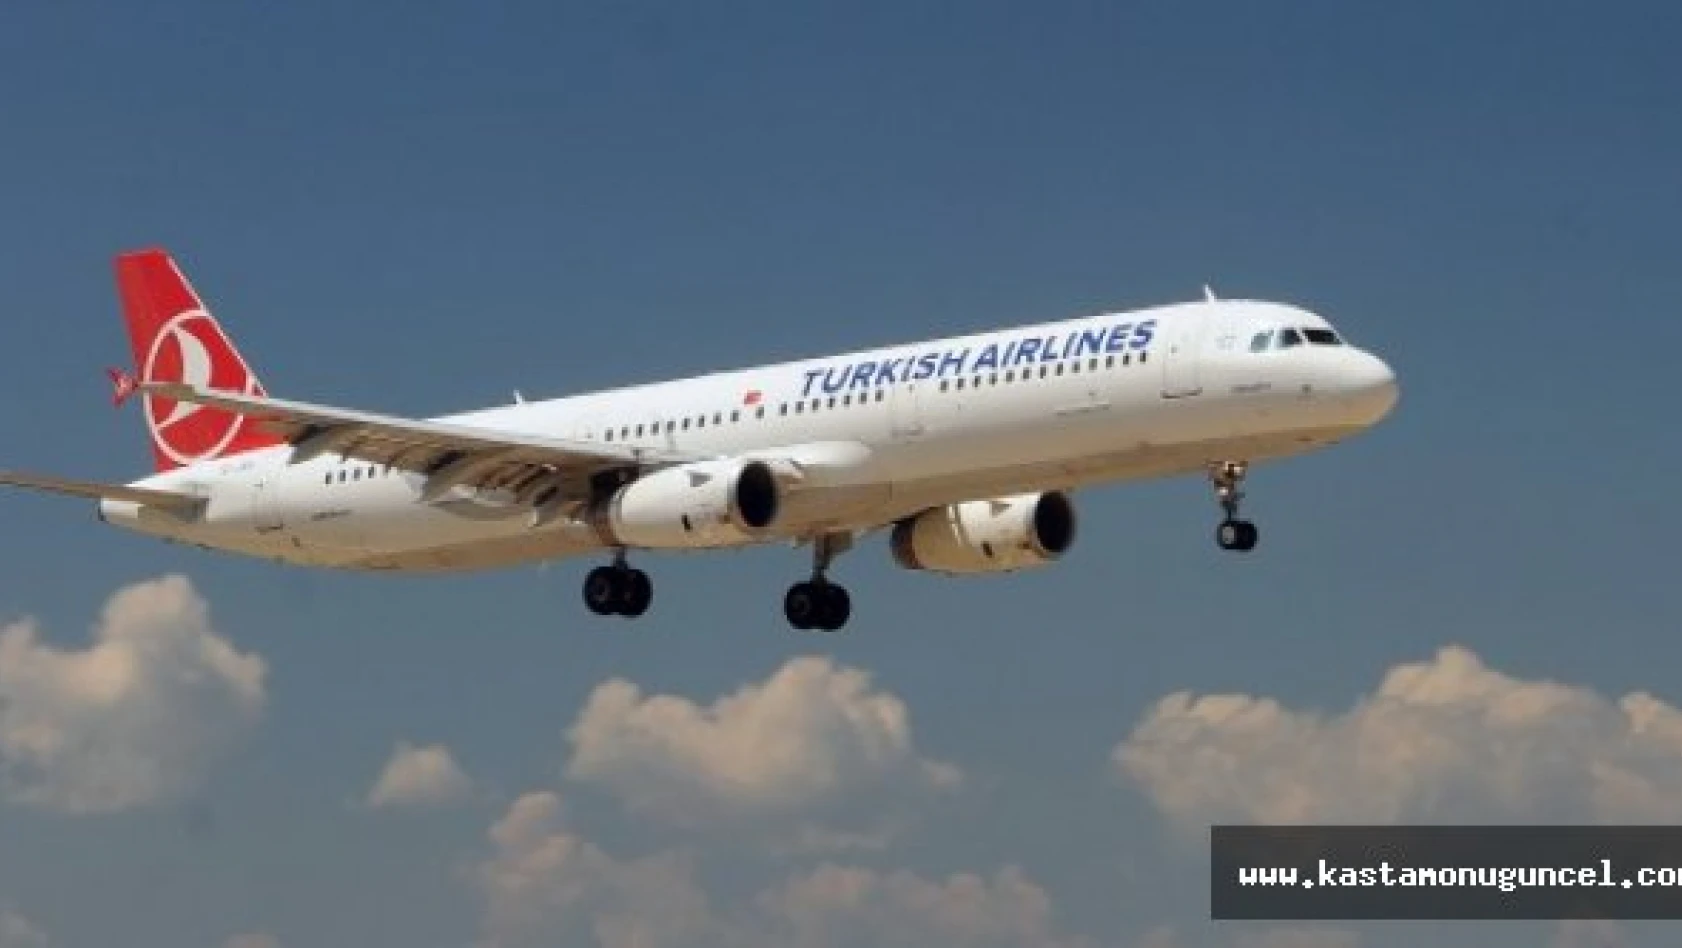 Kastamonu'dan Uluslararası Uçuşlar Yapılabilecek